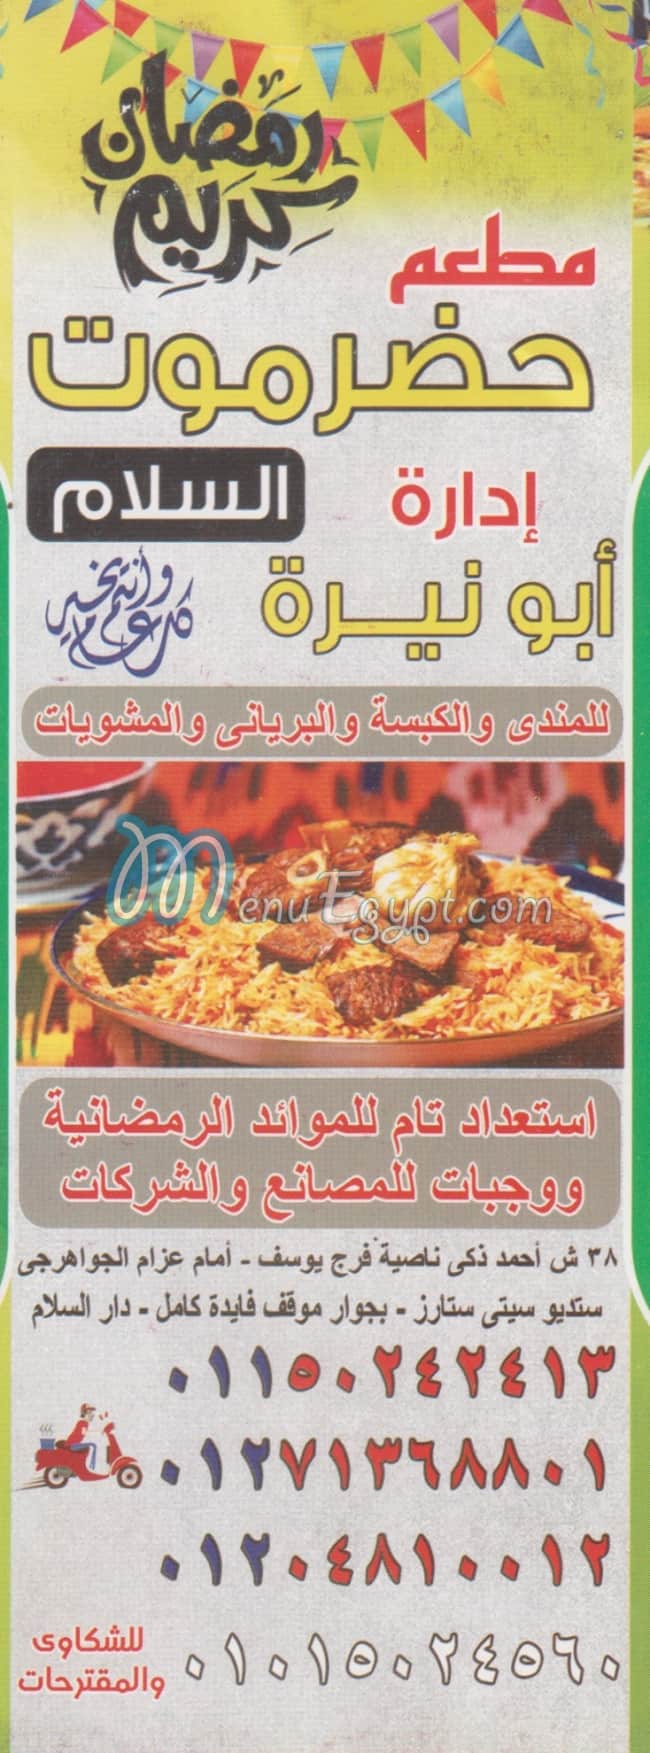 Hadrmot el Salam delivery menu